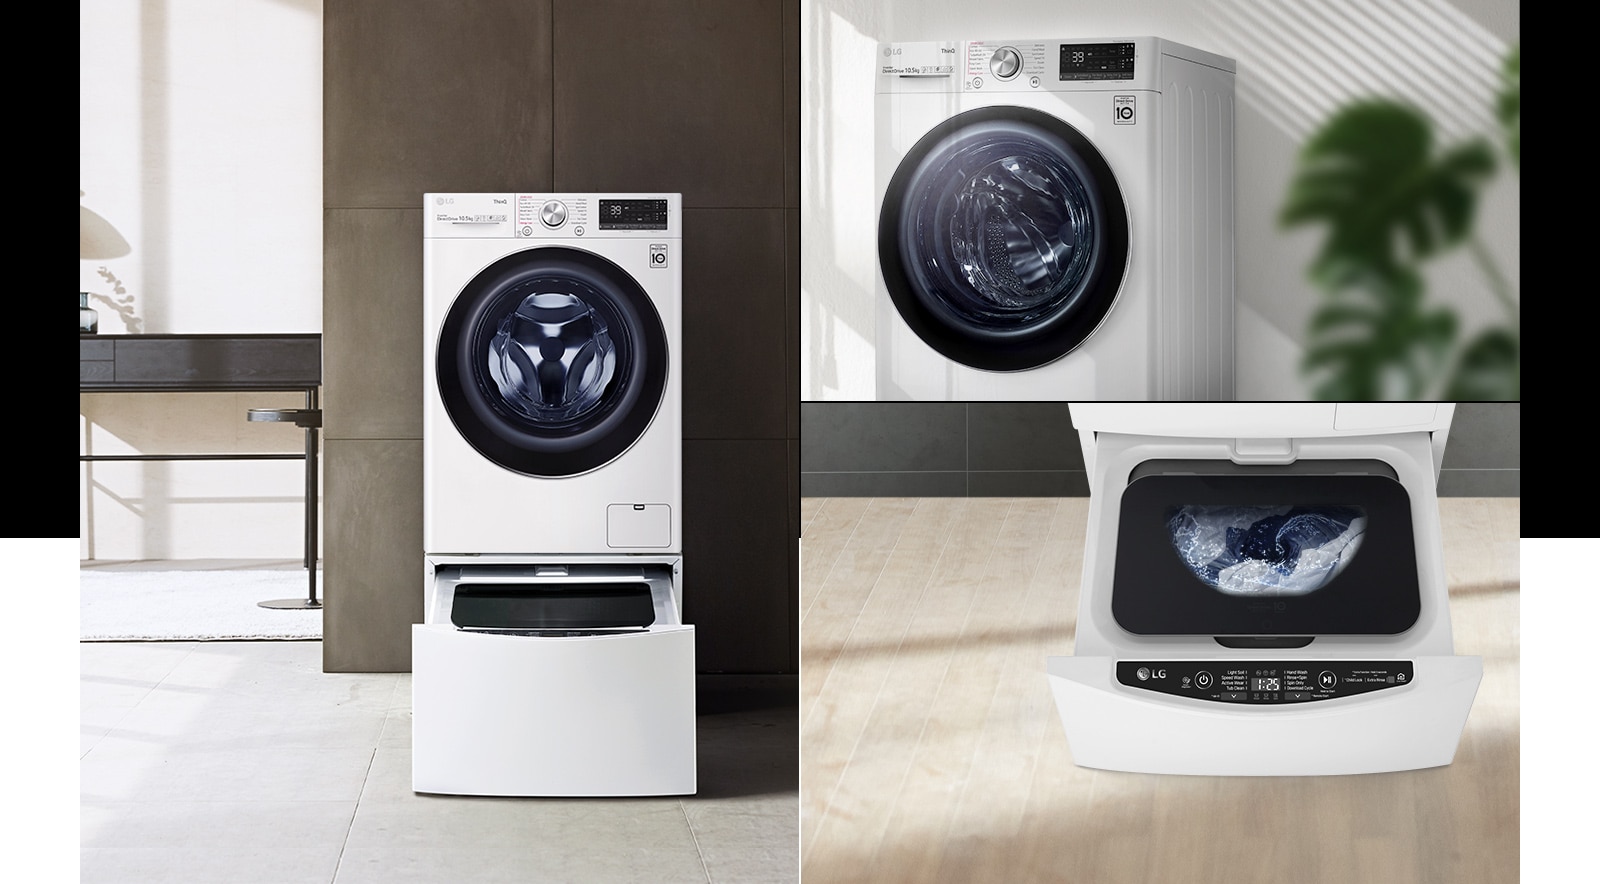 Ba hình ảnh nội thất với máy giặt đôi và máy giặt.